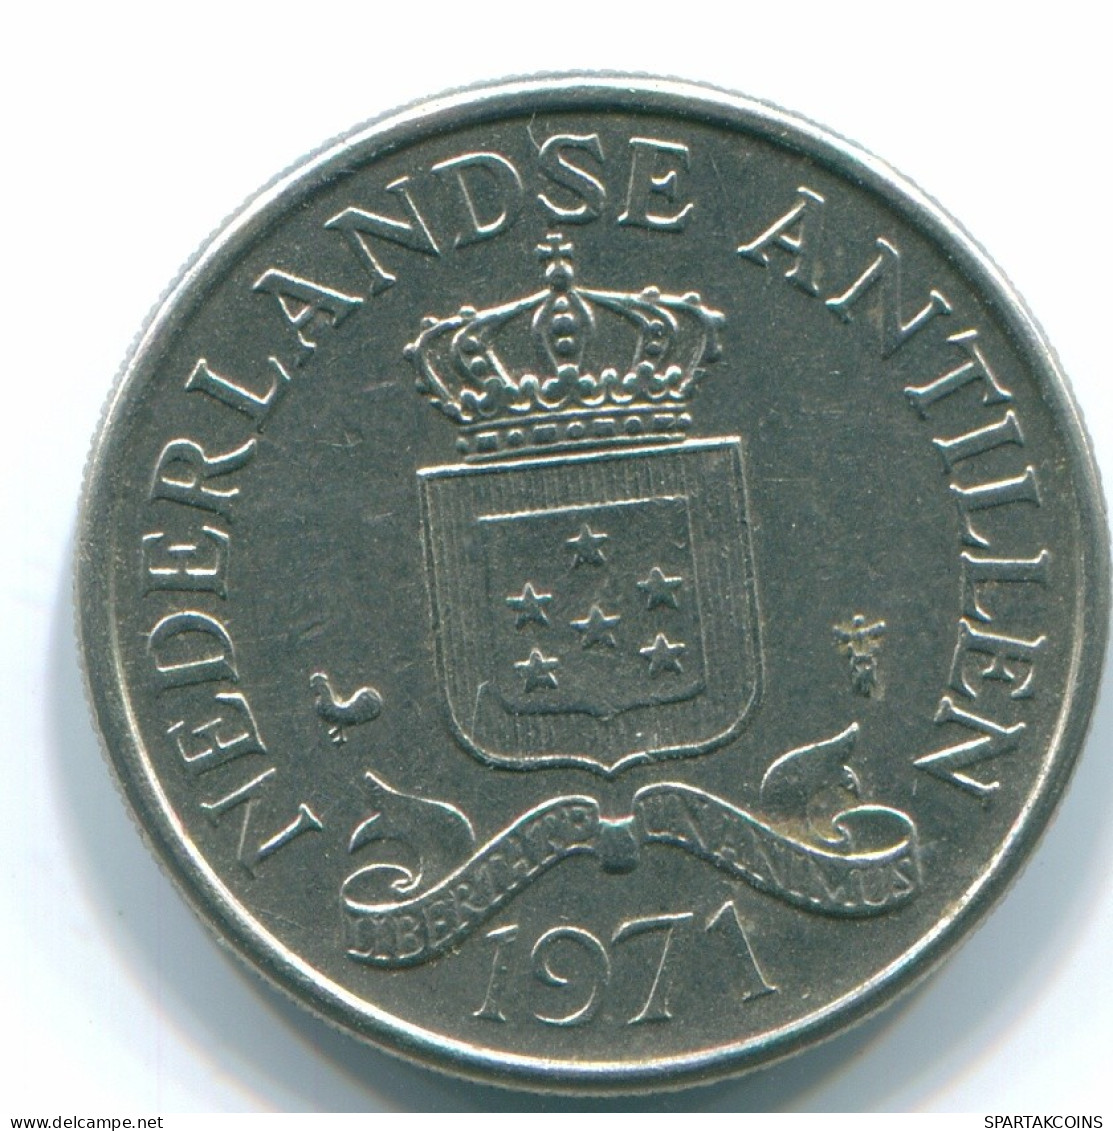 25 CENTS 1971 NIEDERLÄNDISCHE ANTILLEN Nickel Koloniale Münze #S11537.D.A - Antilles Néerlandaises